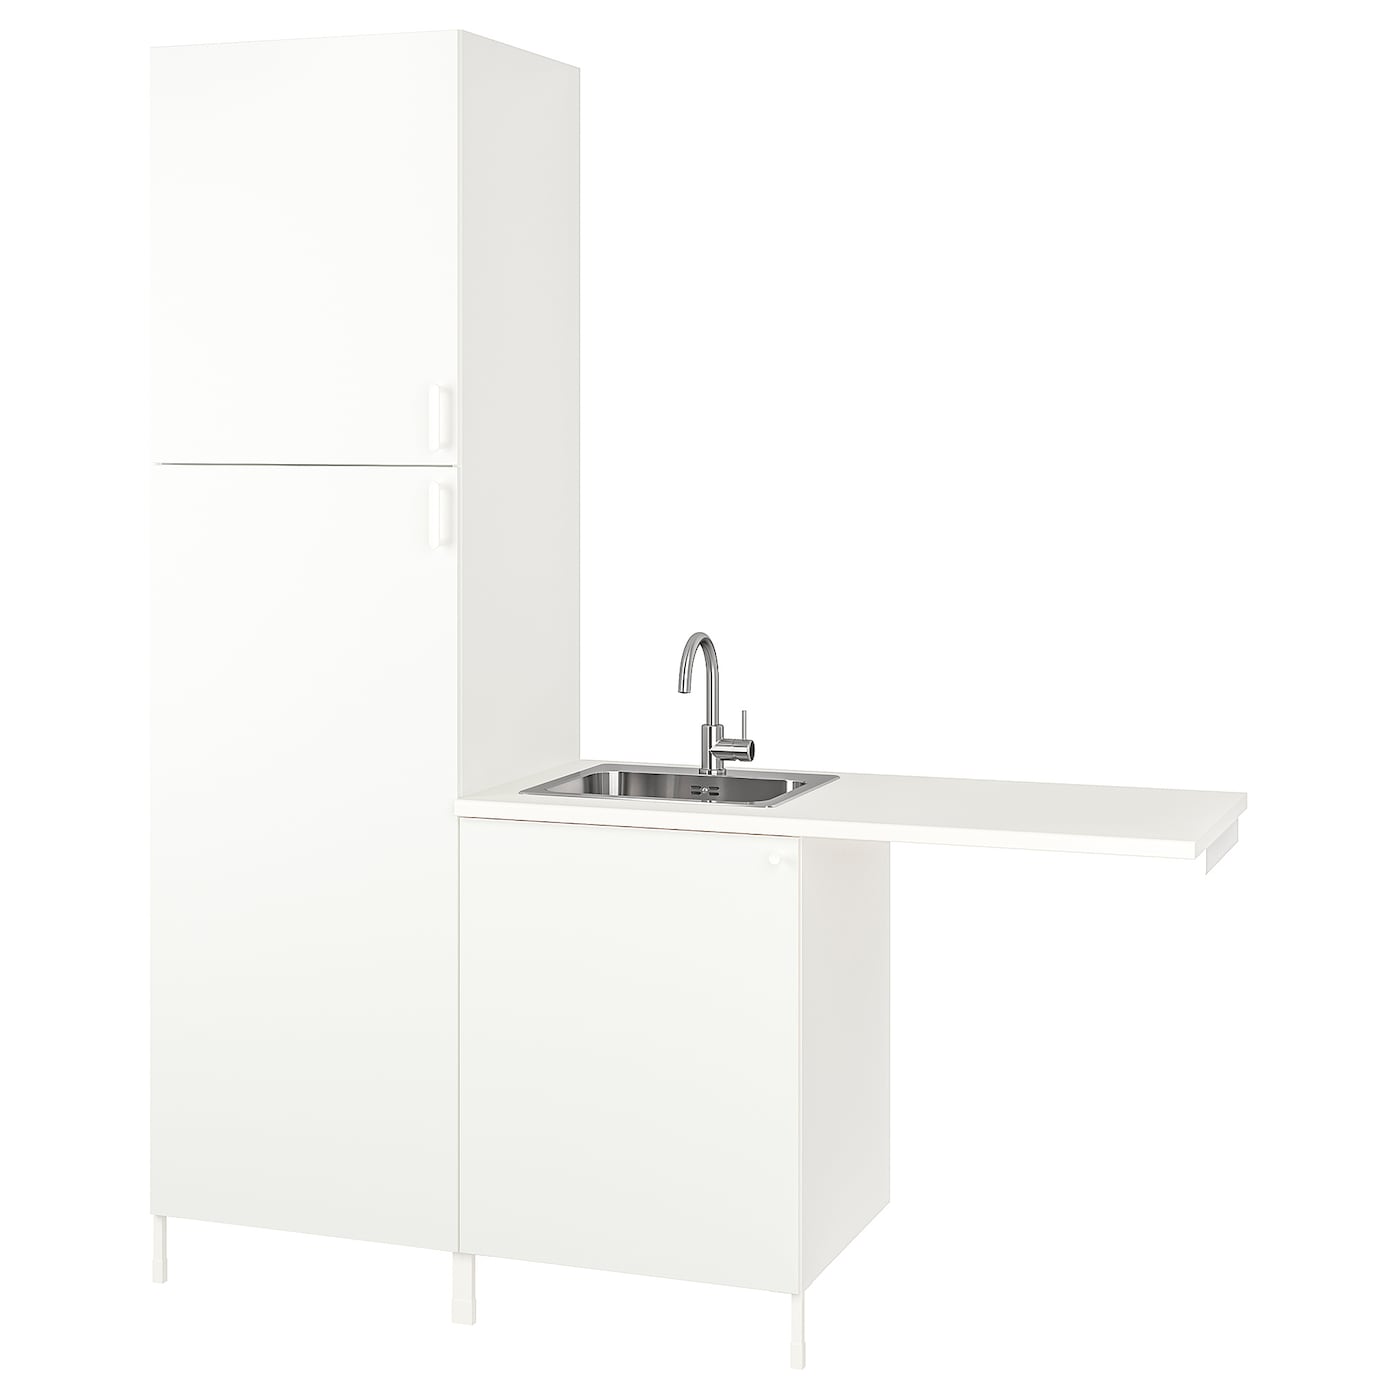 Комбинация для ванной - IKEA ENHET, 183х63.5х222.5 см, белый, ЭНХЕТ ИКЕА